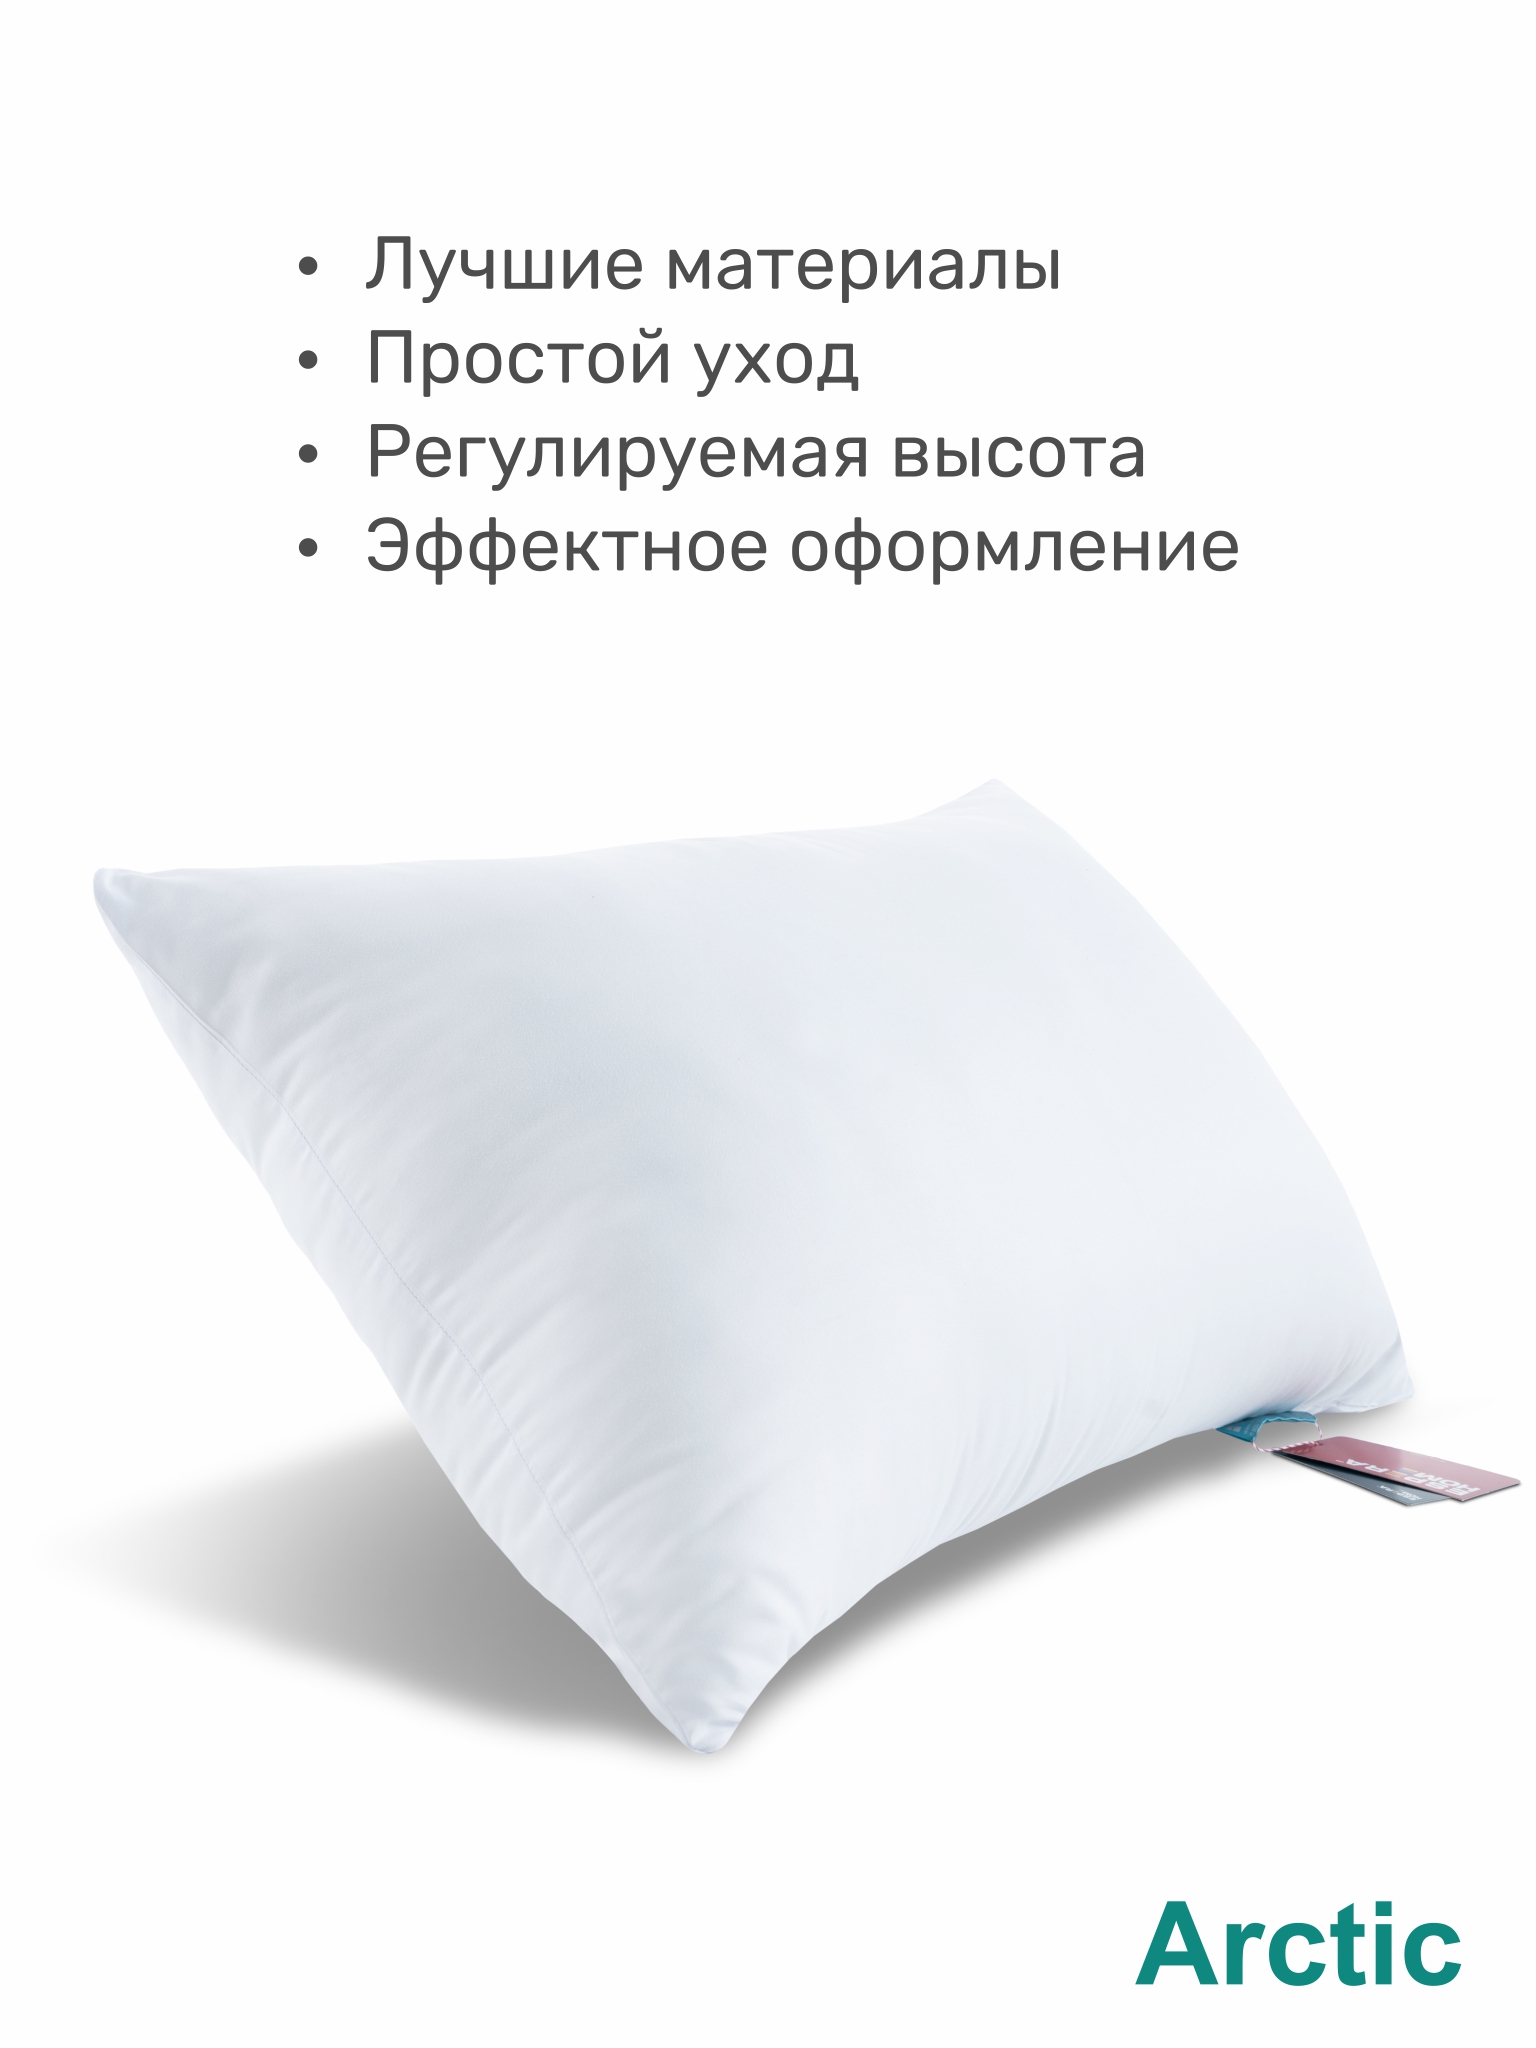 Какую выбрать подушку для сна взрослым. Выбор подушки. Как выбрать подушку для сна наполнитель какой лучше. Какой наполнитель лучше для подушки для сна взрослым. Подушка для тела Comfort u натуральный латекс espera (цилиндры).